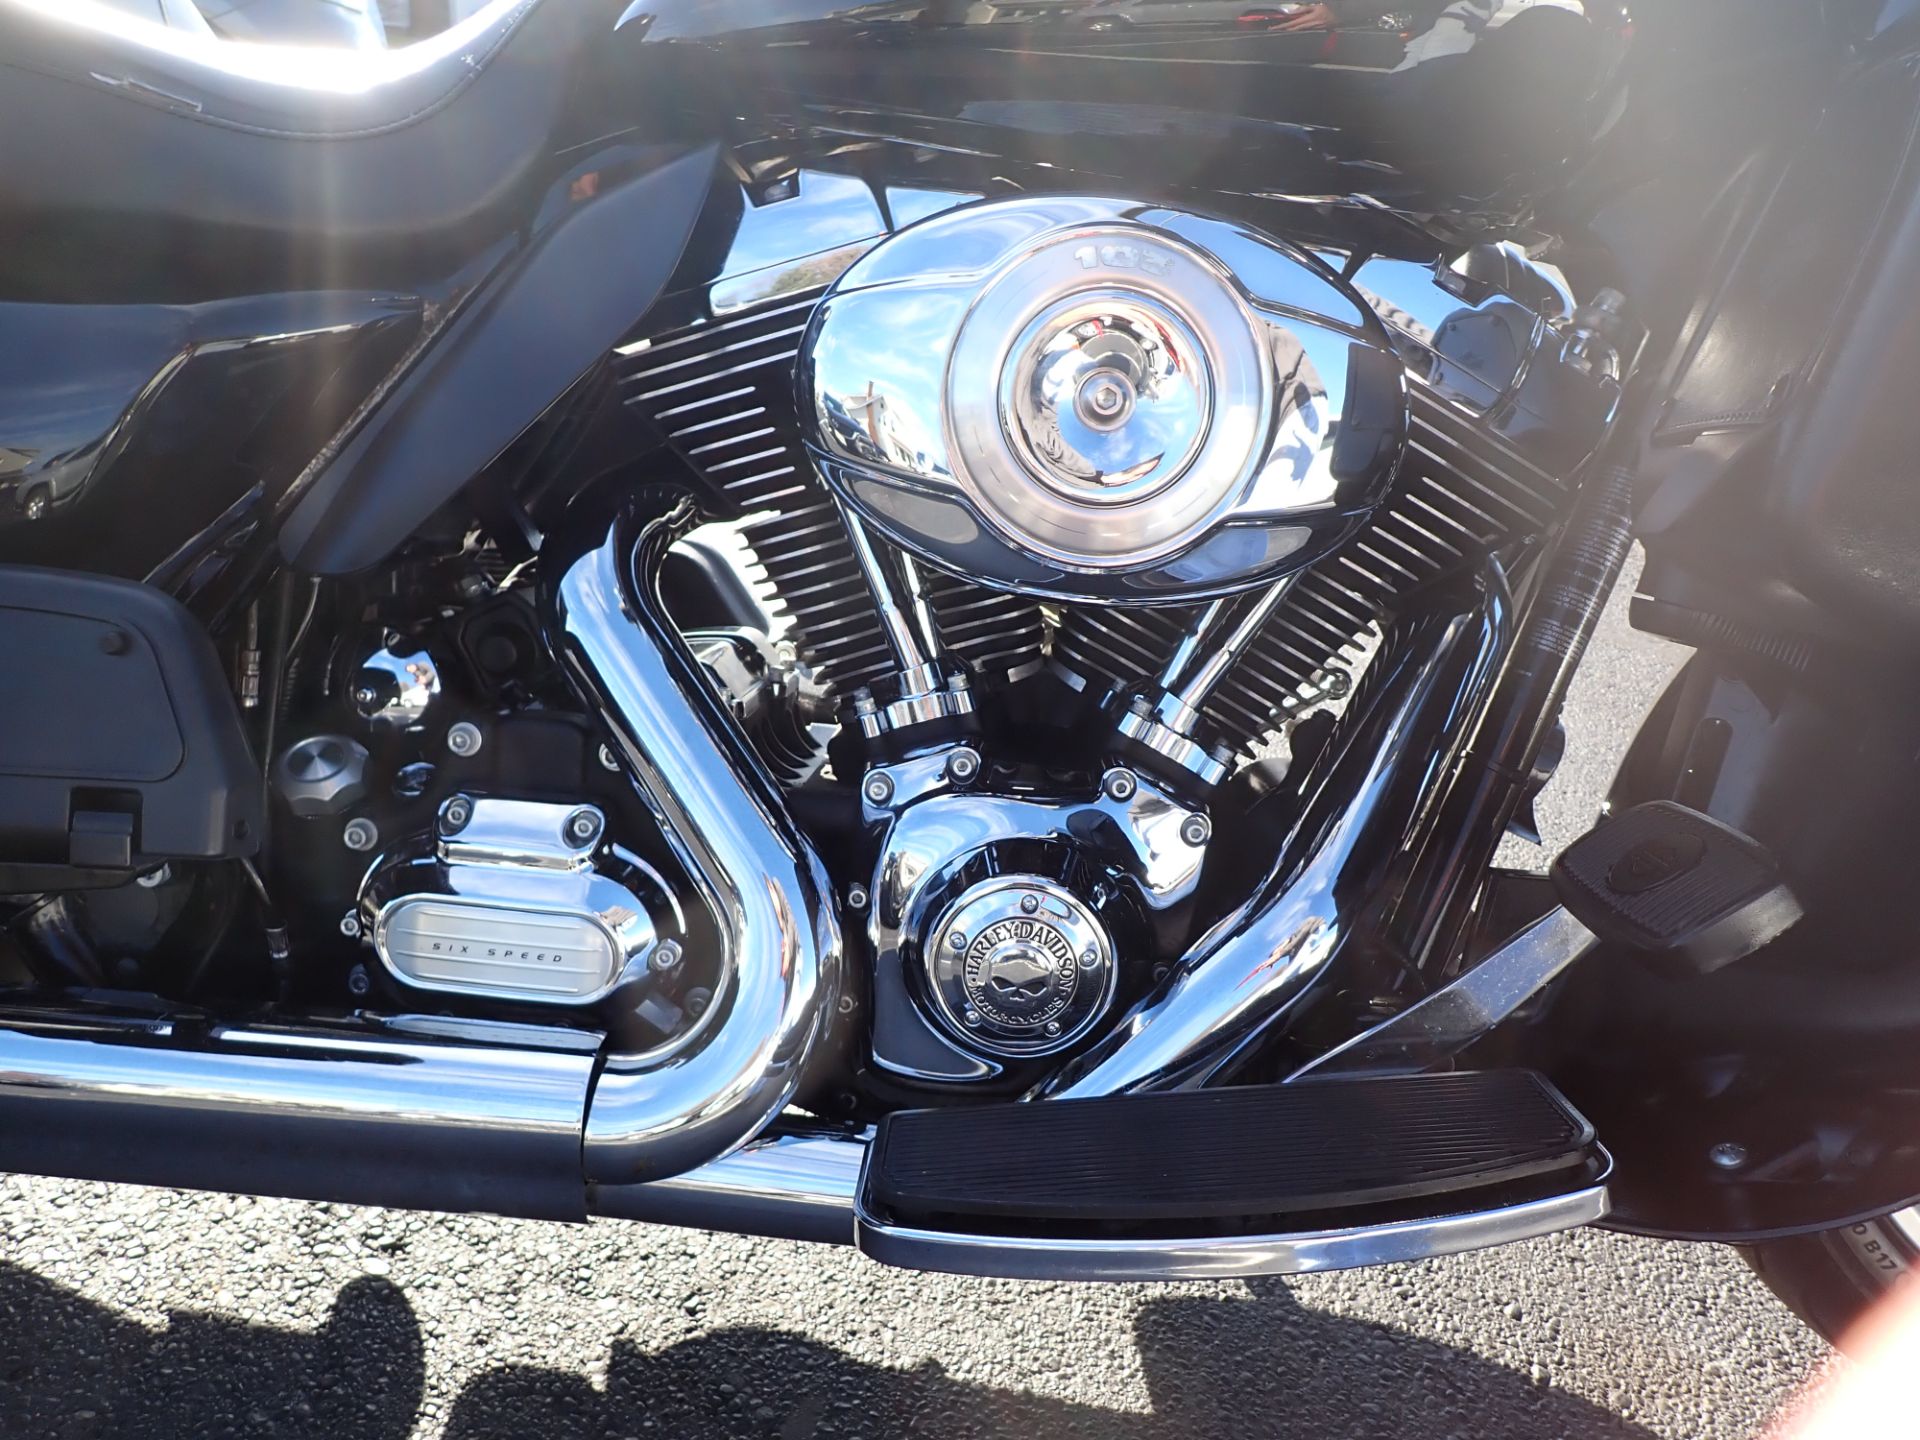 2011 Harley-Davidson Road Glide® Ultra in Massillon, Ohio - Photo 4